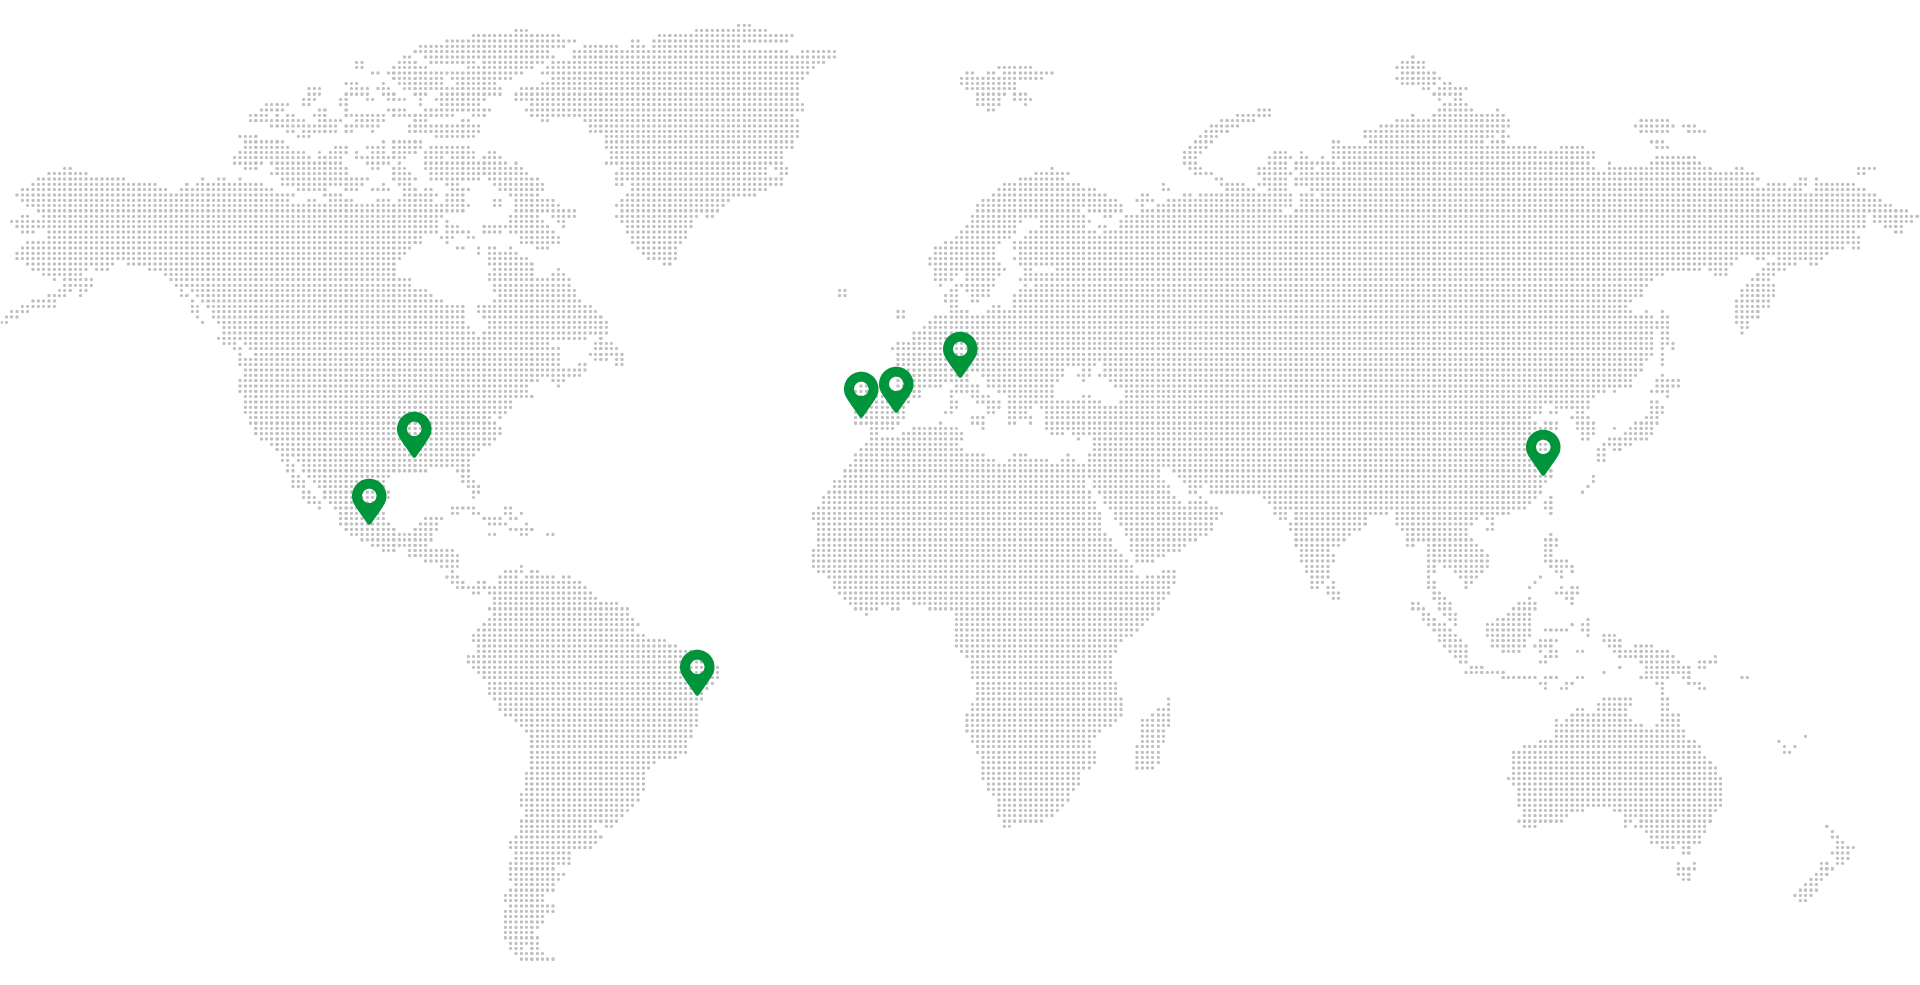 Global map